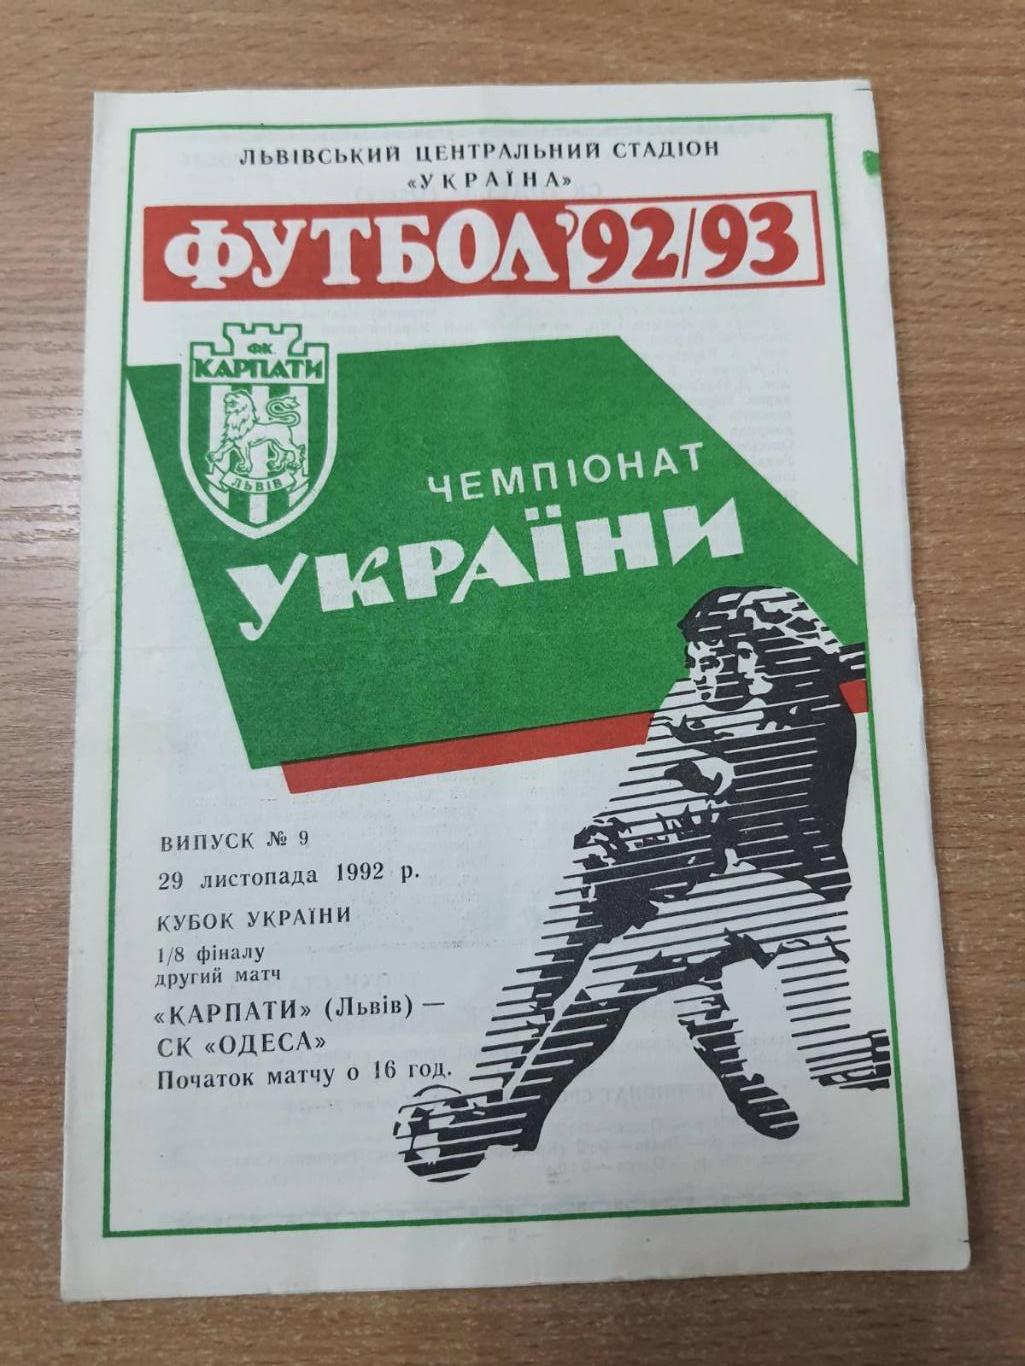 Карпаты (Львов) - СК Одесса 29.11.1992 Кубок Украины